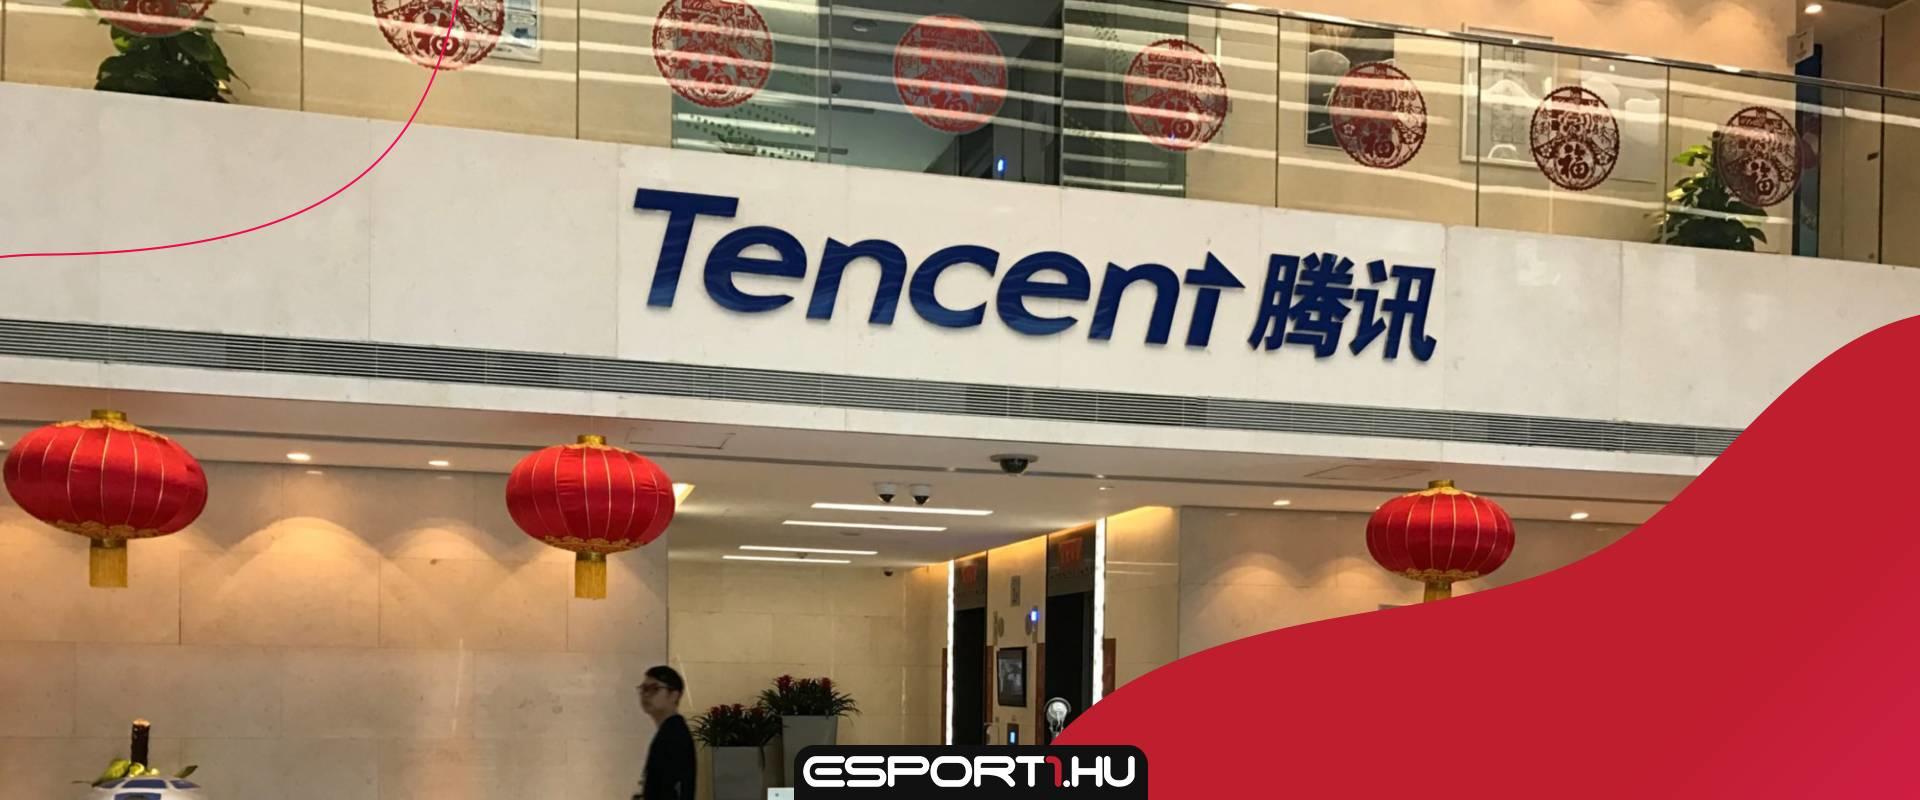 Arcfelismerő rendszerrel szigorított a Tencent Kínában